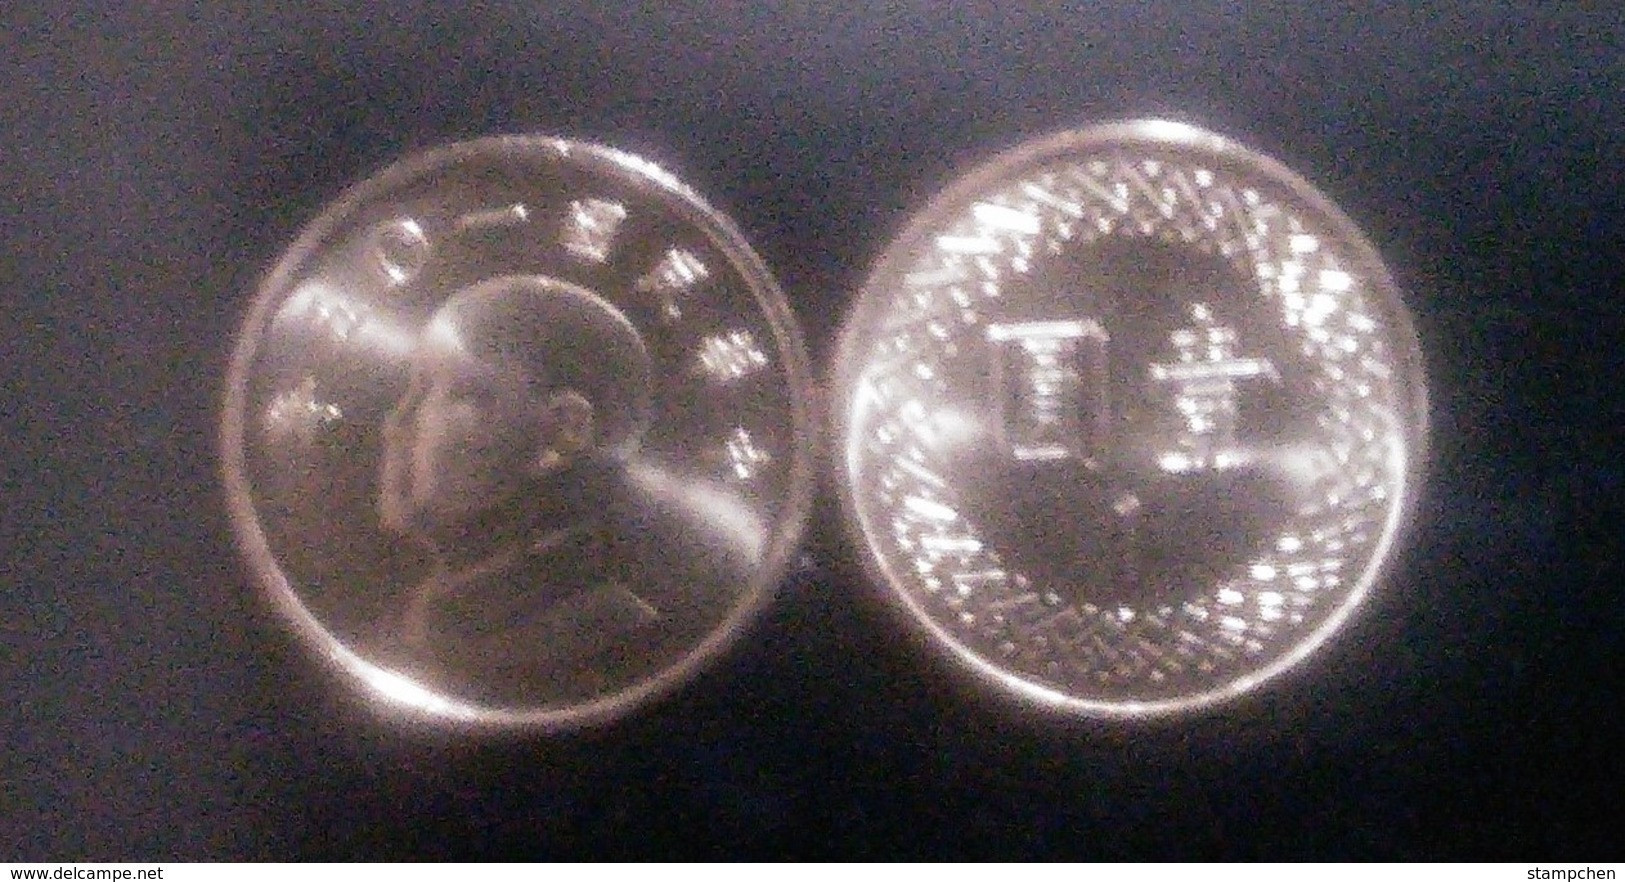 2016 Taiwan 1 Yuan NT$1.00 Chiang Kai-shek CKS Coin - Taiwan